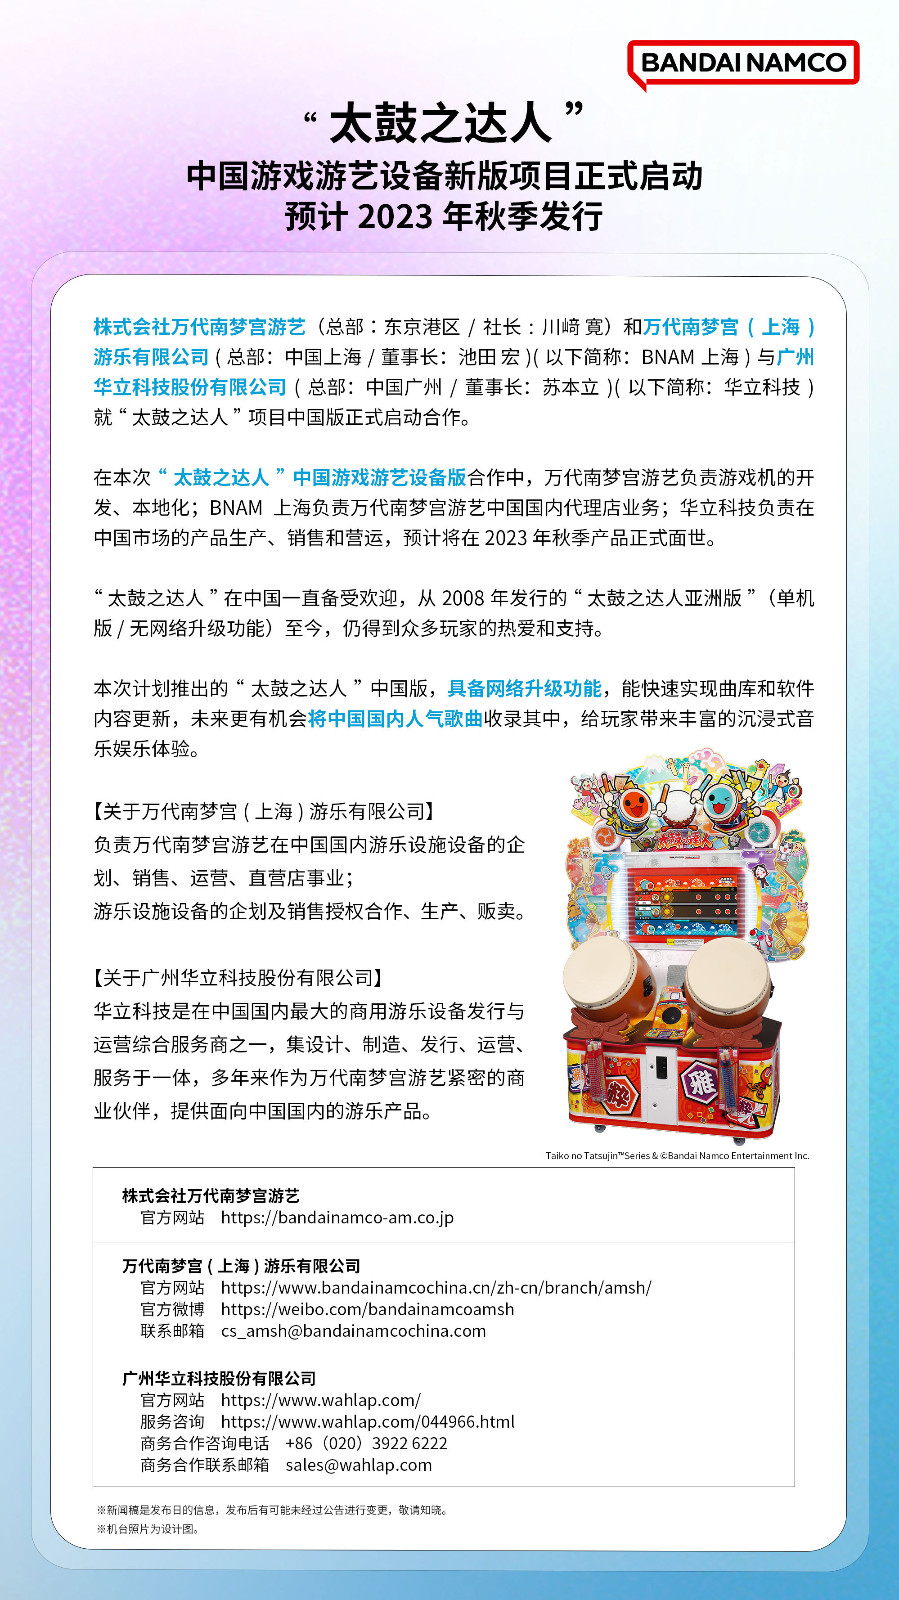 音游人狂喜 “太鼓之达人”中国游戏游艺设备新版项目正式启动